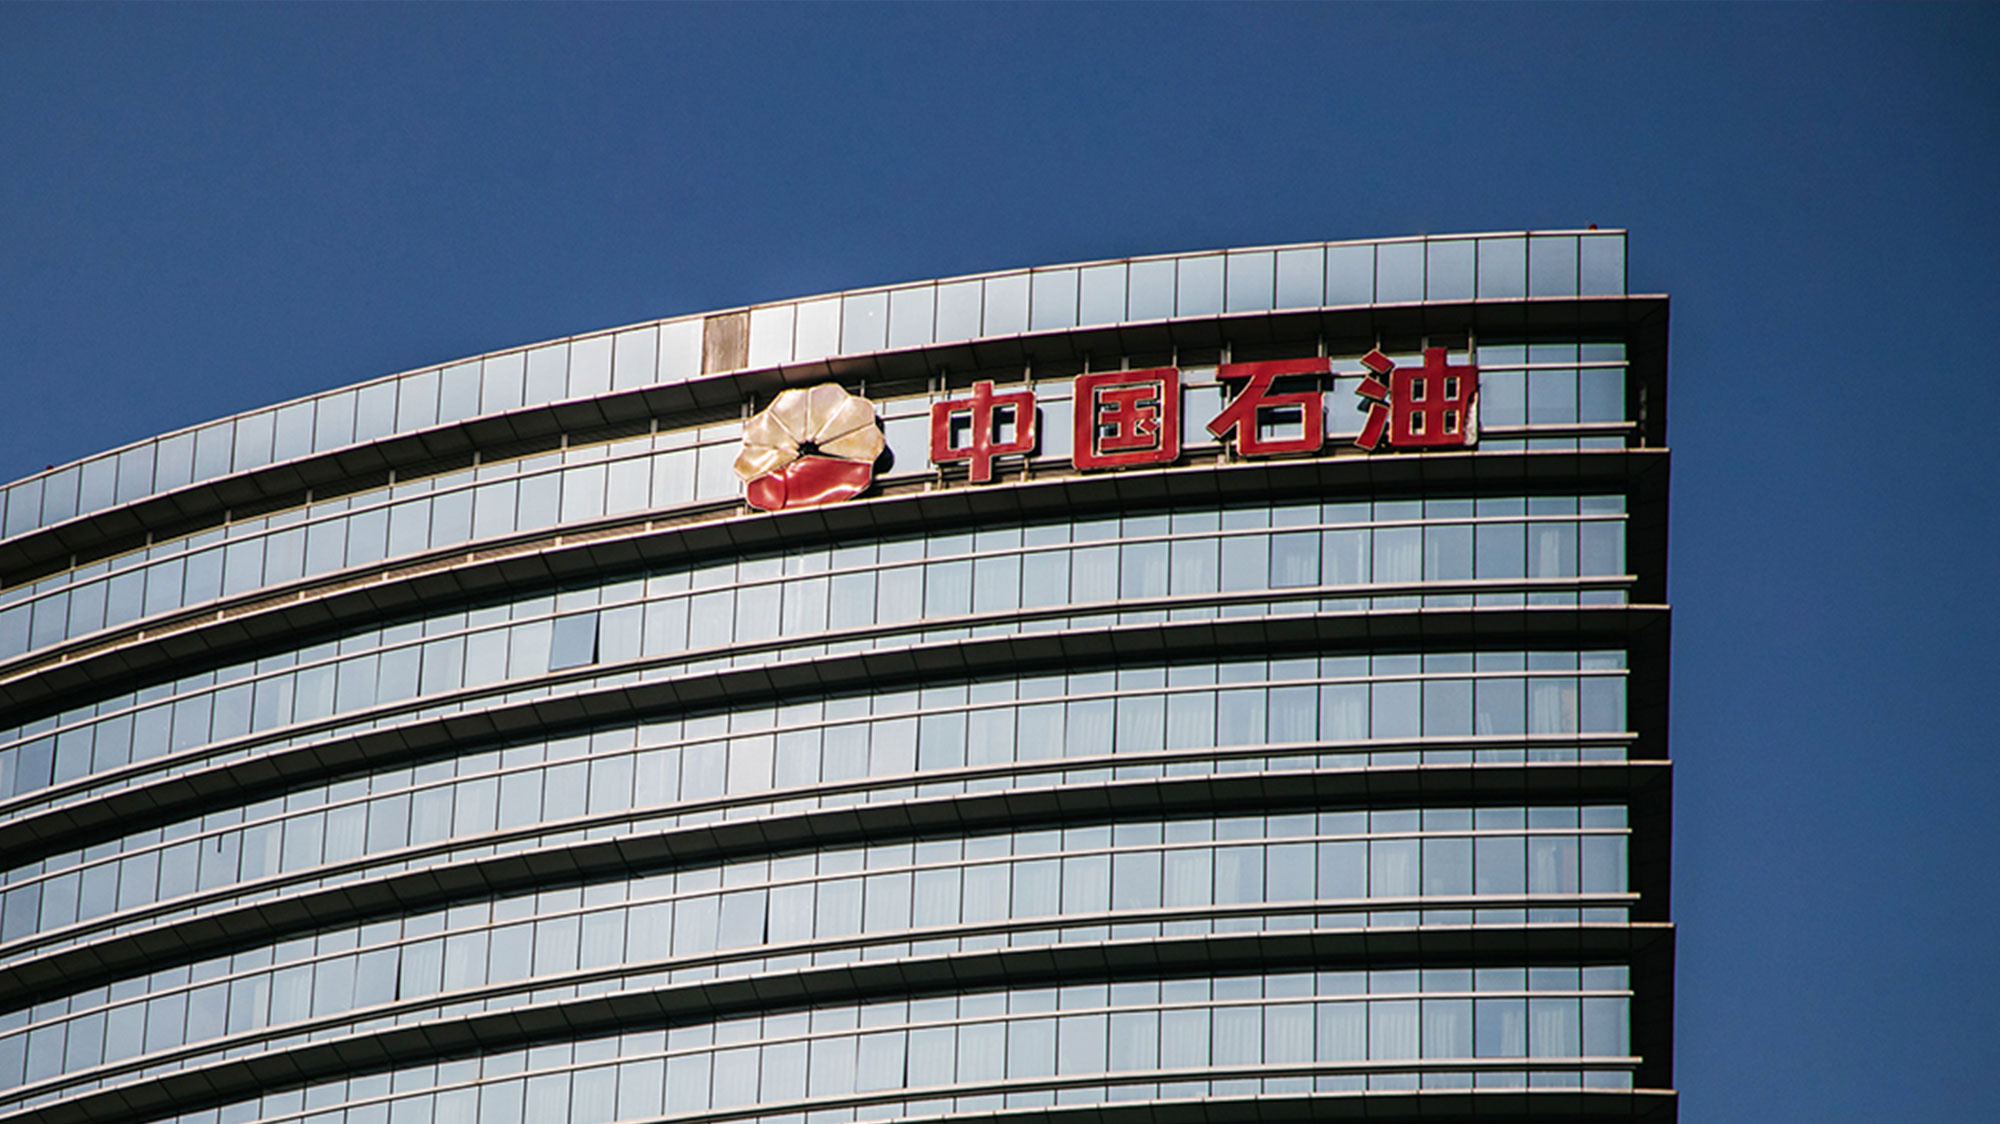 中国石油LOGO设计楼顶标识